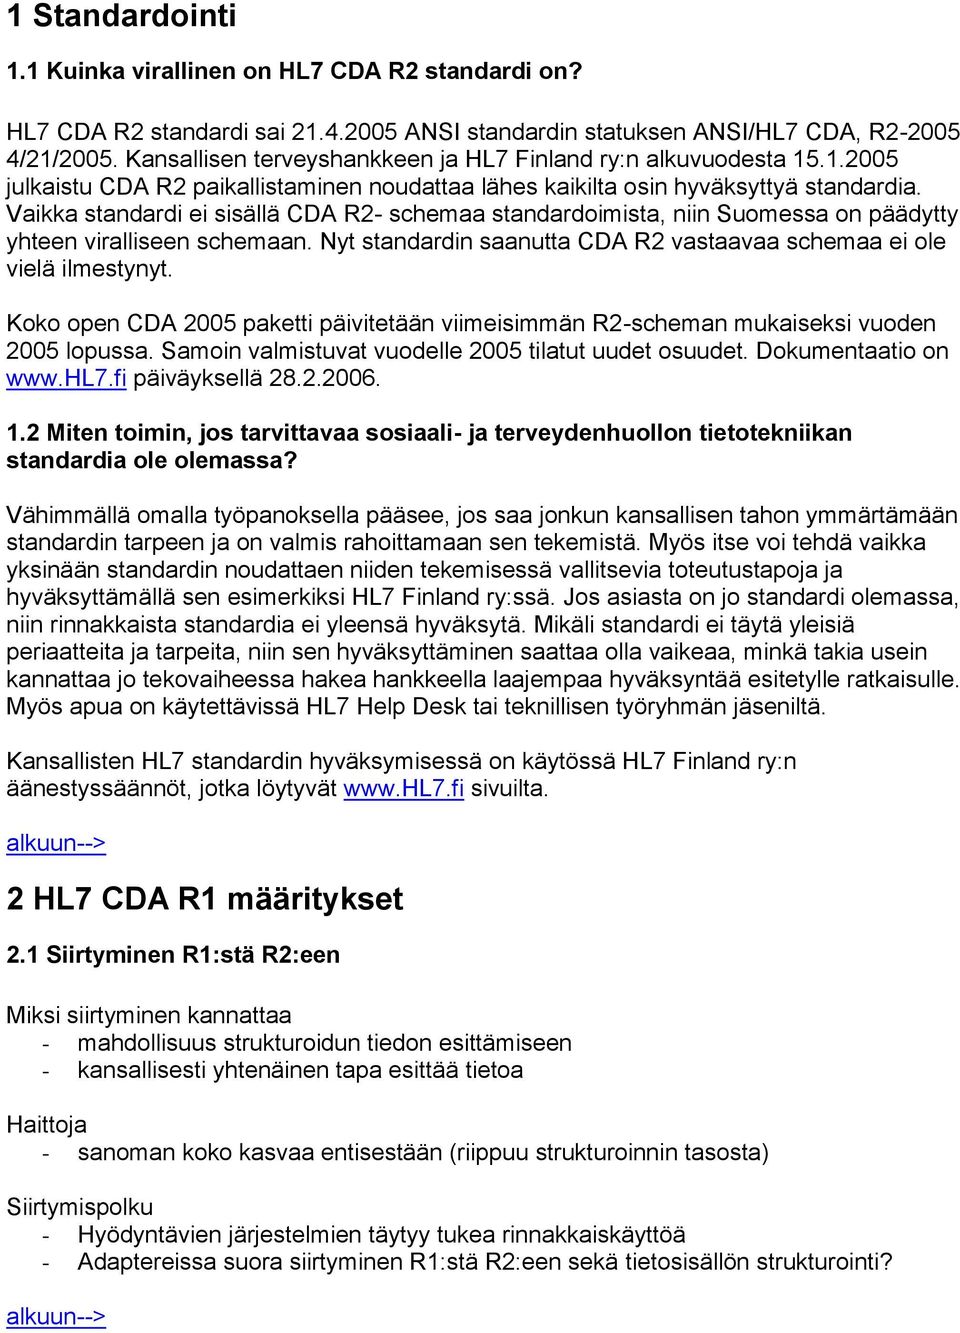 Vaikka standardi ei sisällä CDA R2- schemaa standardoimista, niin Suomessa on päädytty yhteen viralliseen schemaan. Nyt standardin saanutta CDA R2 vastaavaa schemaa ei ole vielä ilmestynyt.